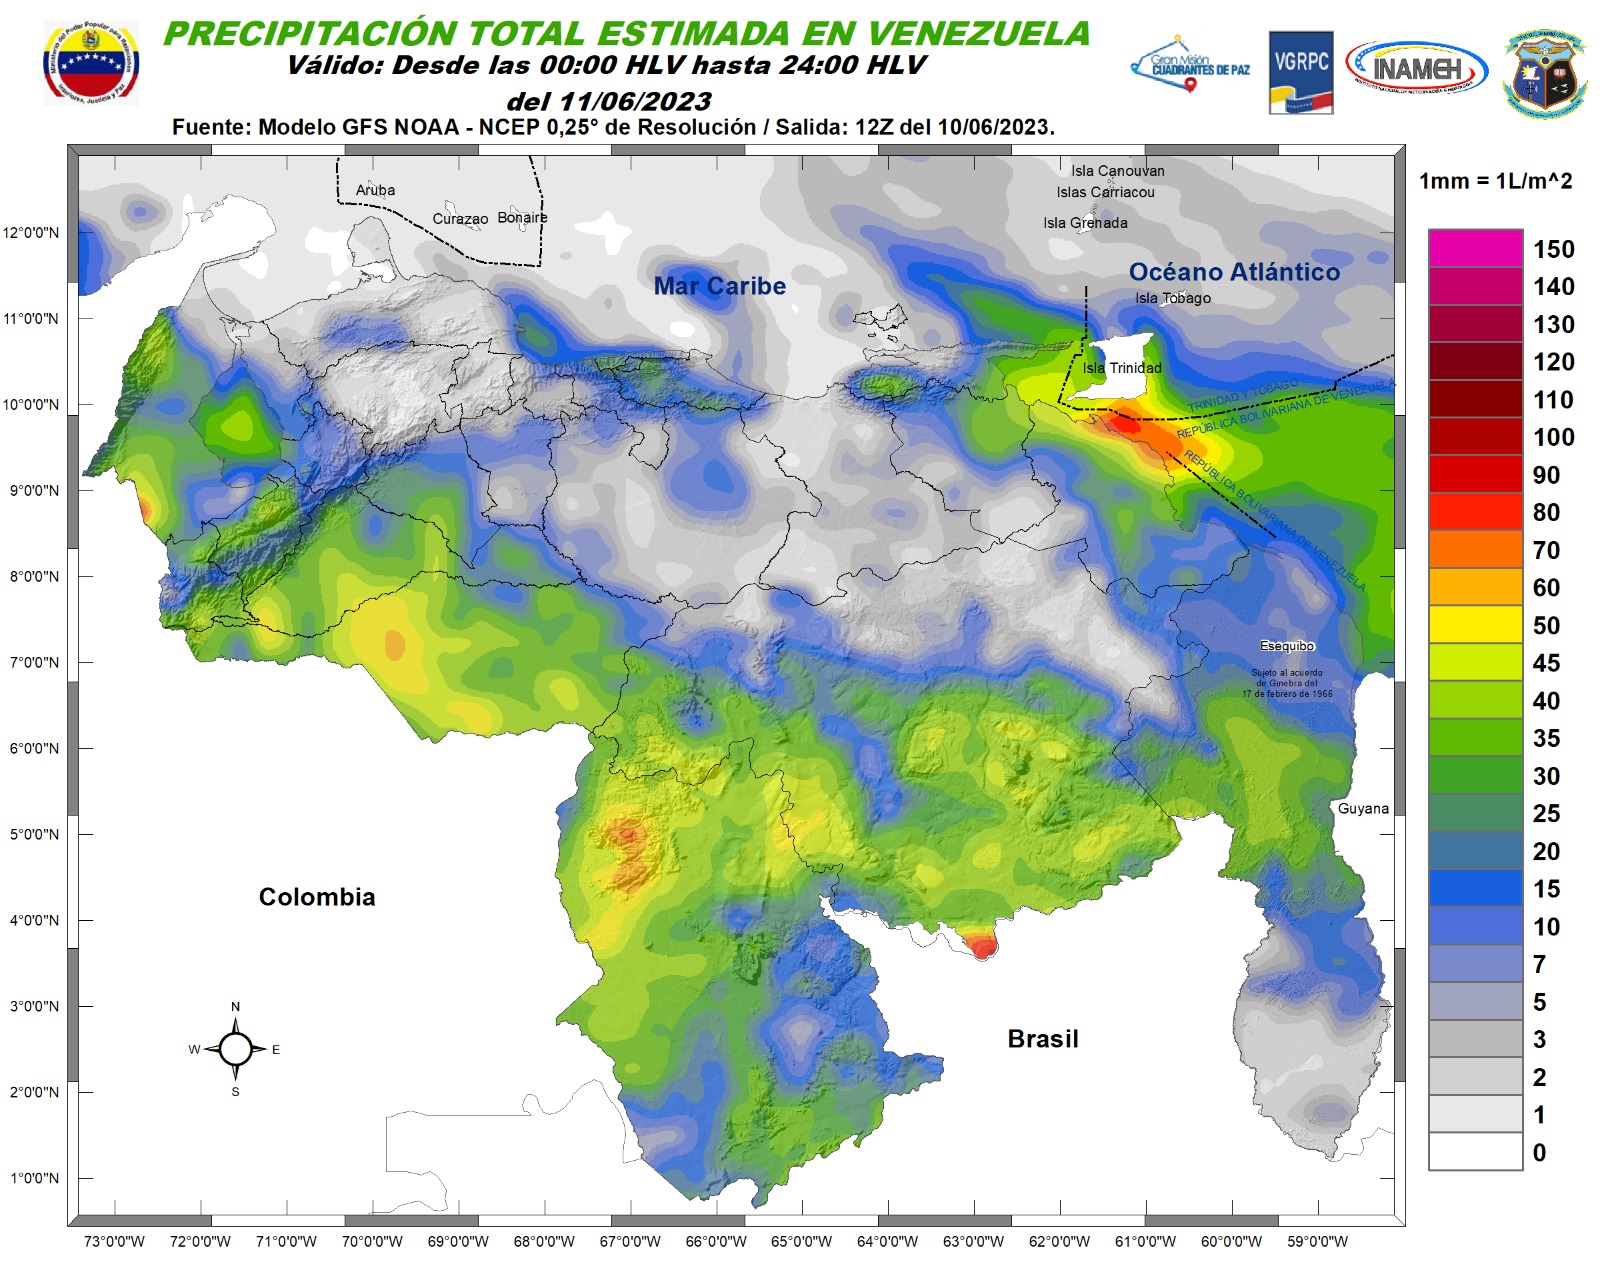 Inameh prevé fuertes lluvias y descargas eléctricas en varios estados de Venezuela este #11Jun